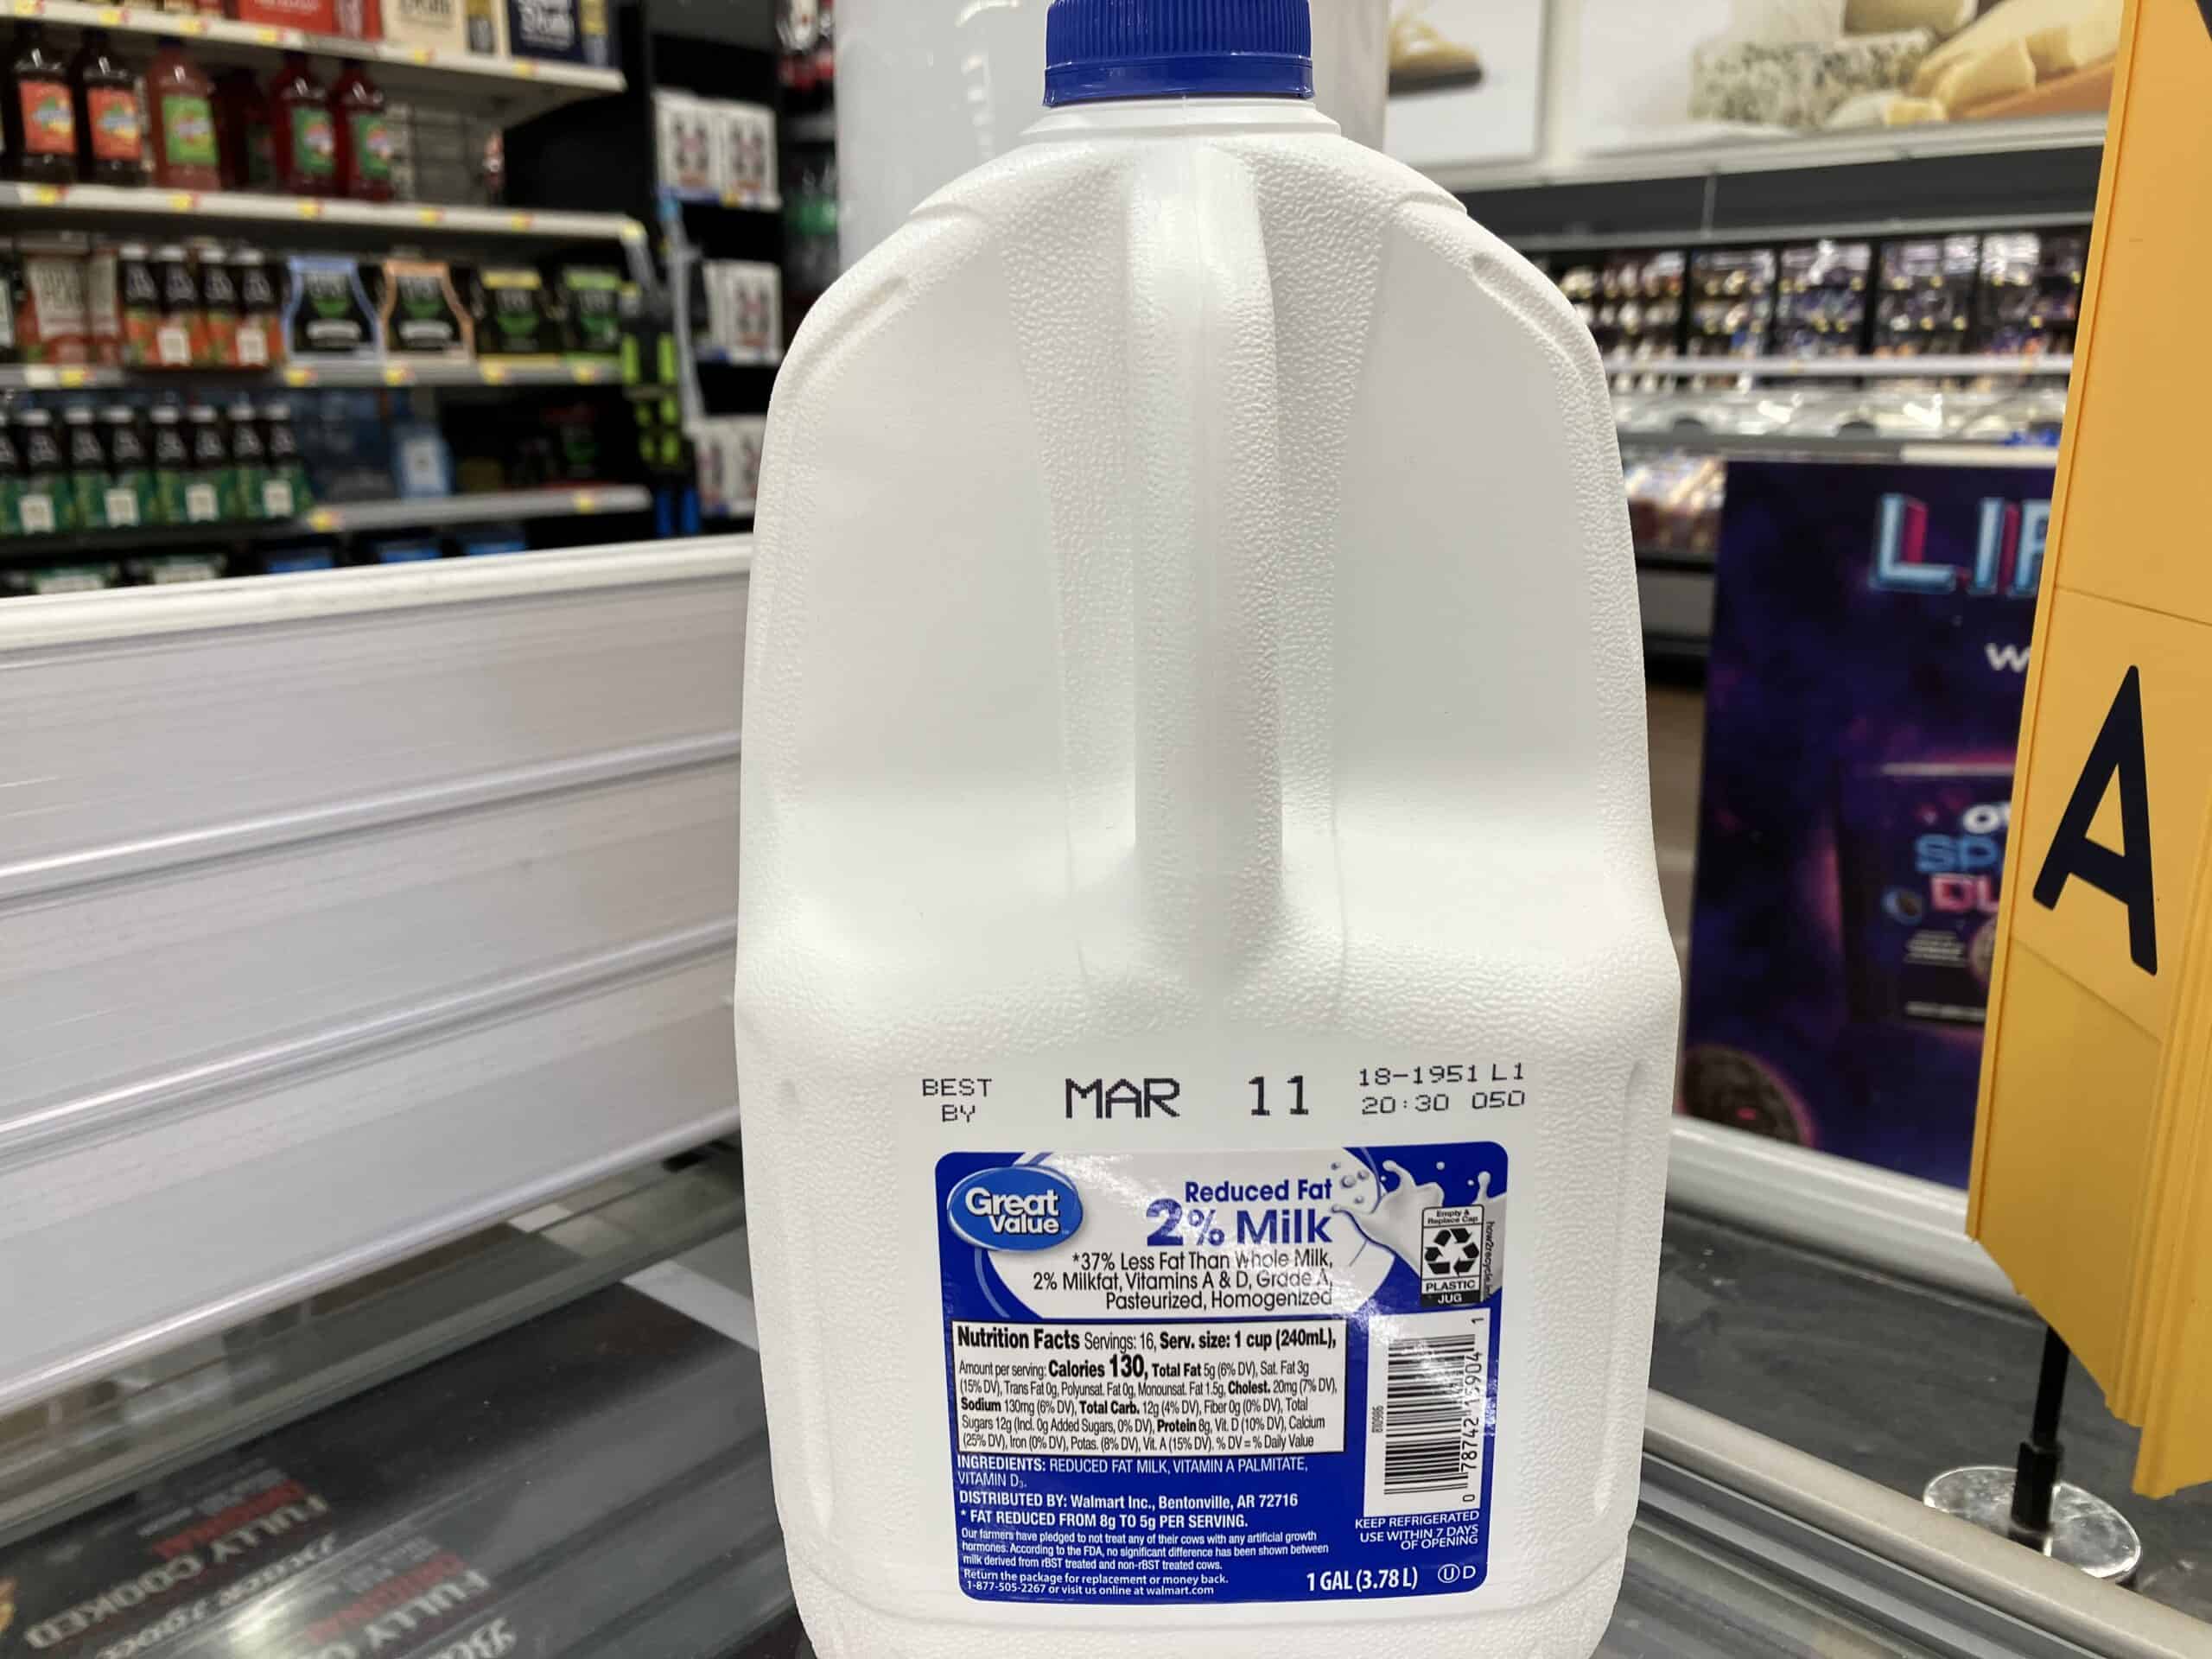 Great Value milk